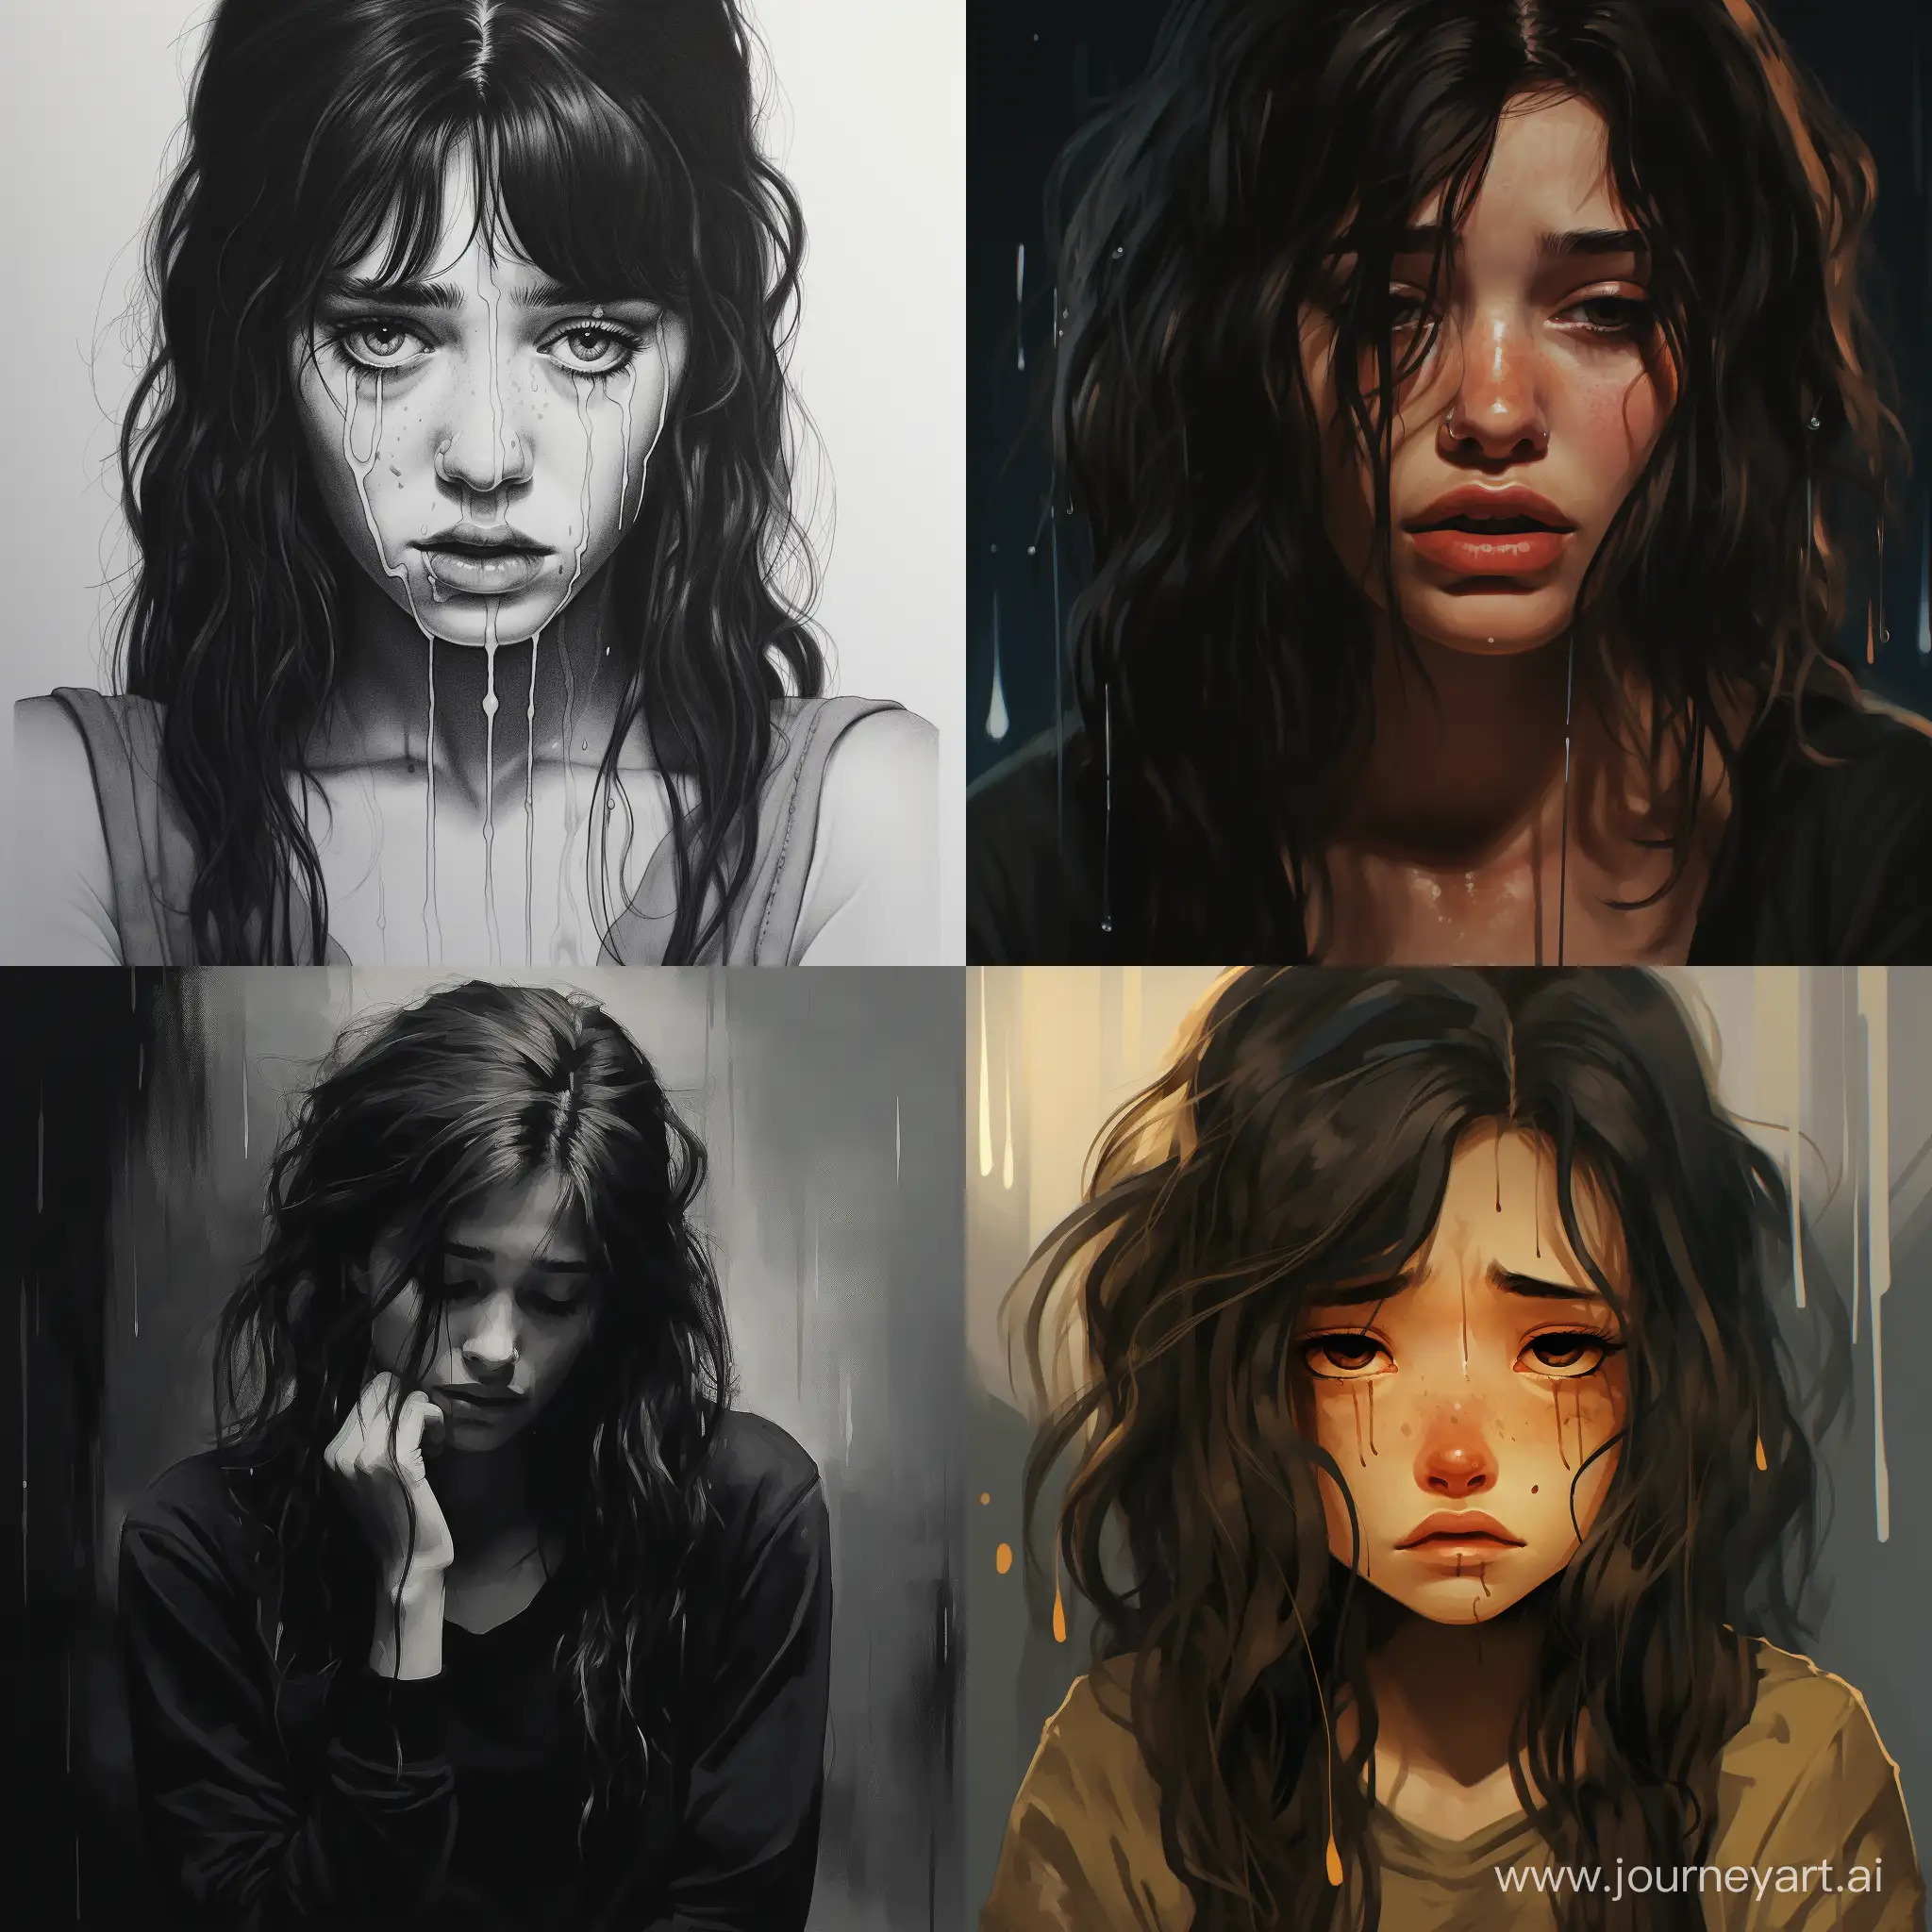 Heartbroken-Girl-Crying-in-Solitude